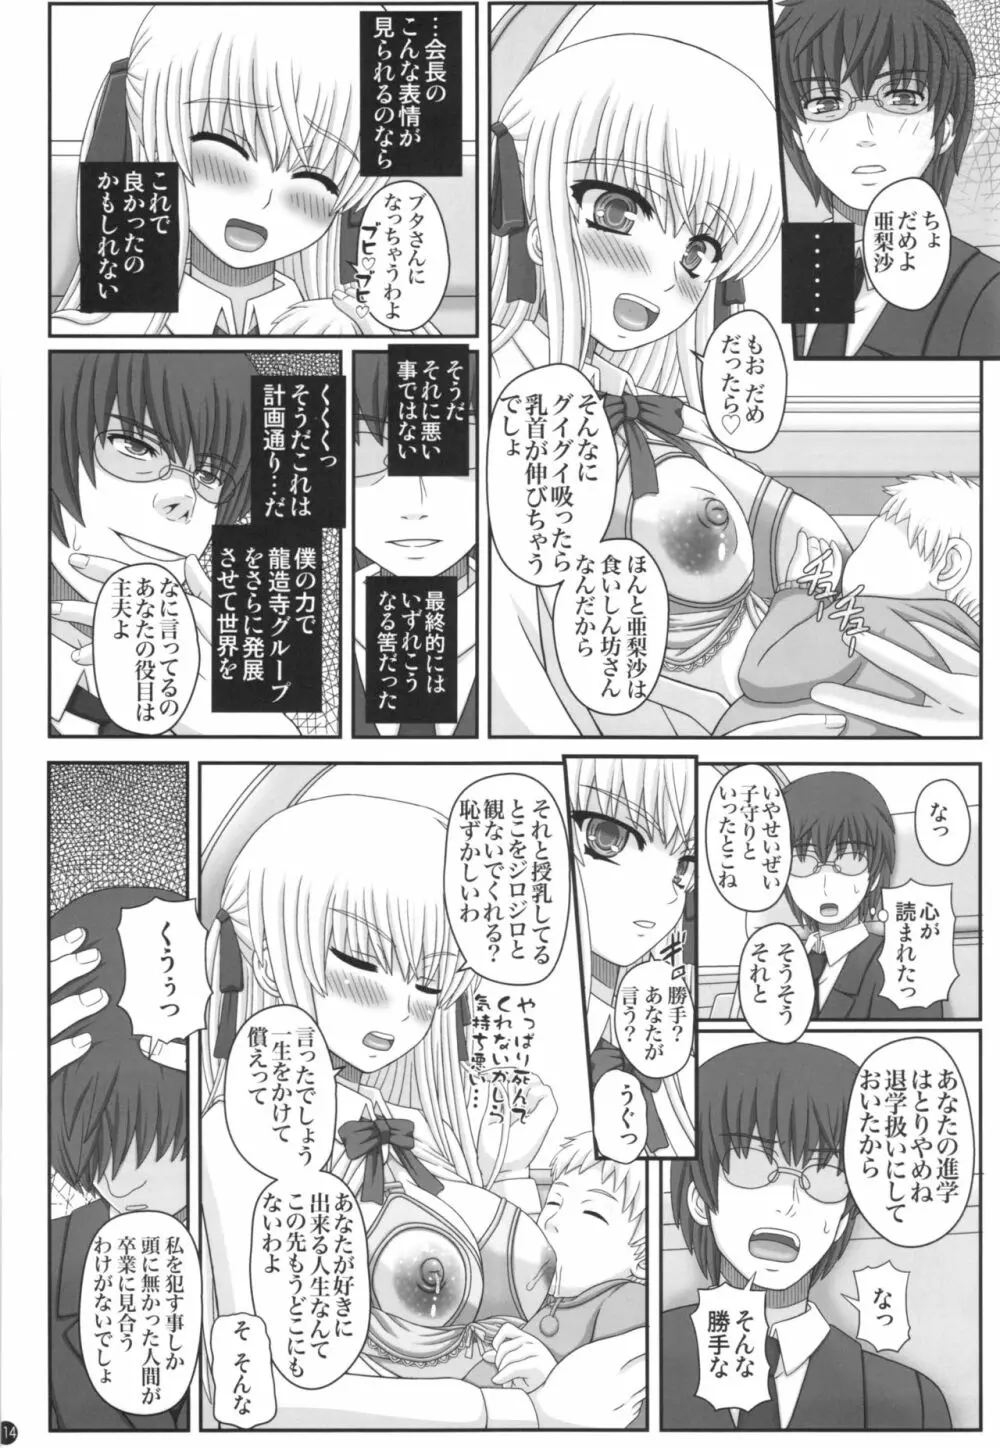 Katashibu 40-shuu 114ページ